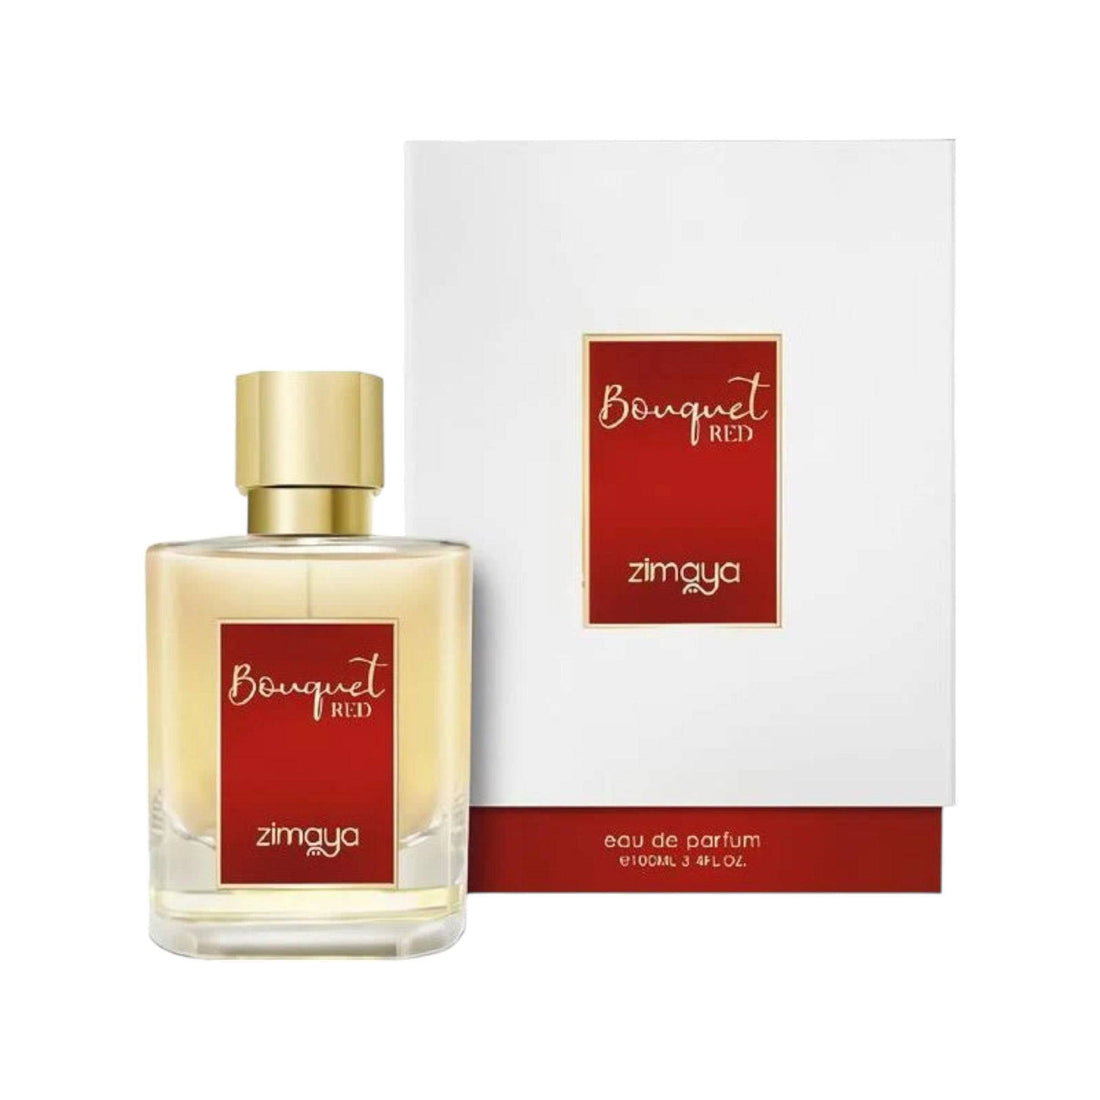 Sophisticated 100ml bottle of Zimaya Bouquet Red Eau De Parfum, showcasing its elegant design and rich color scheme.